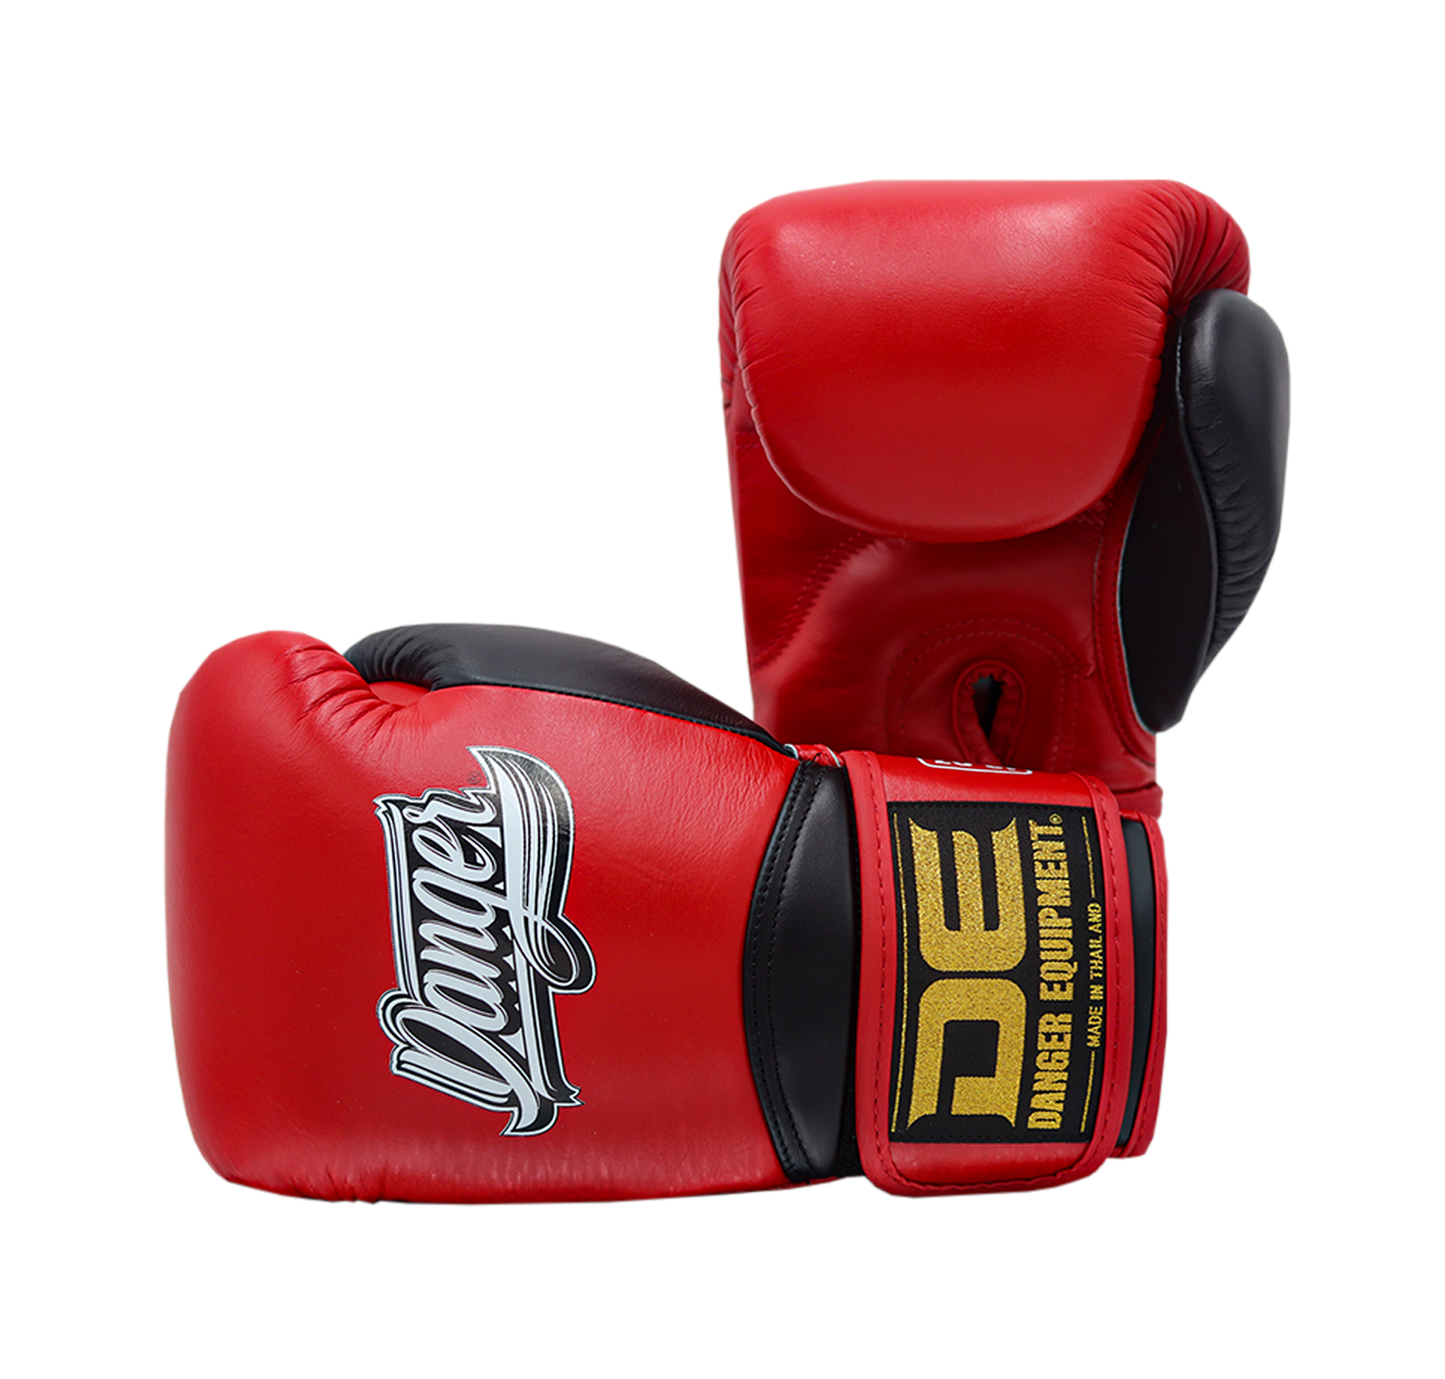 DANGER Boxing Gloves Rocket 5.0 Red